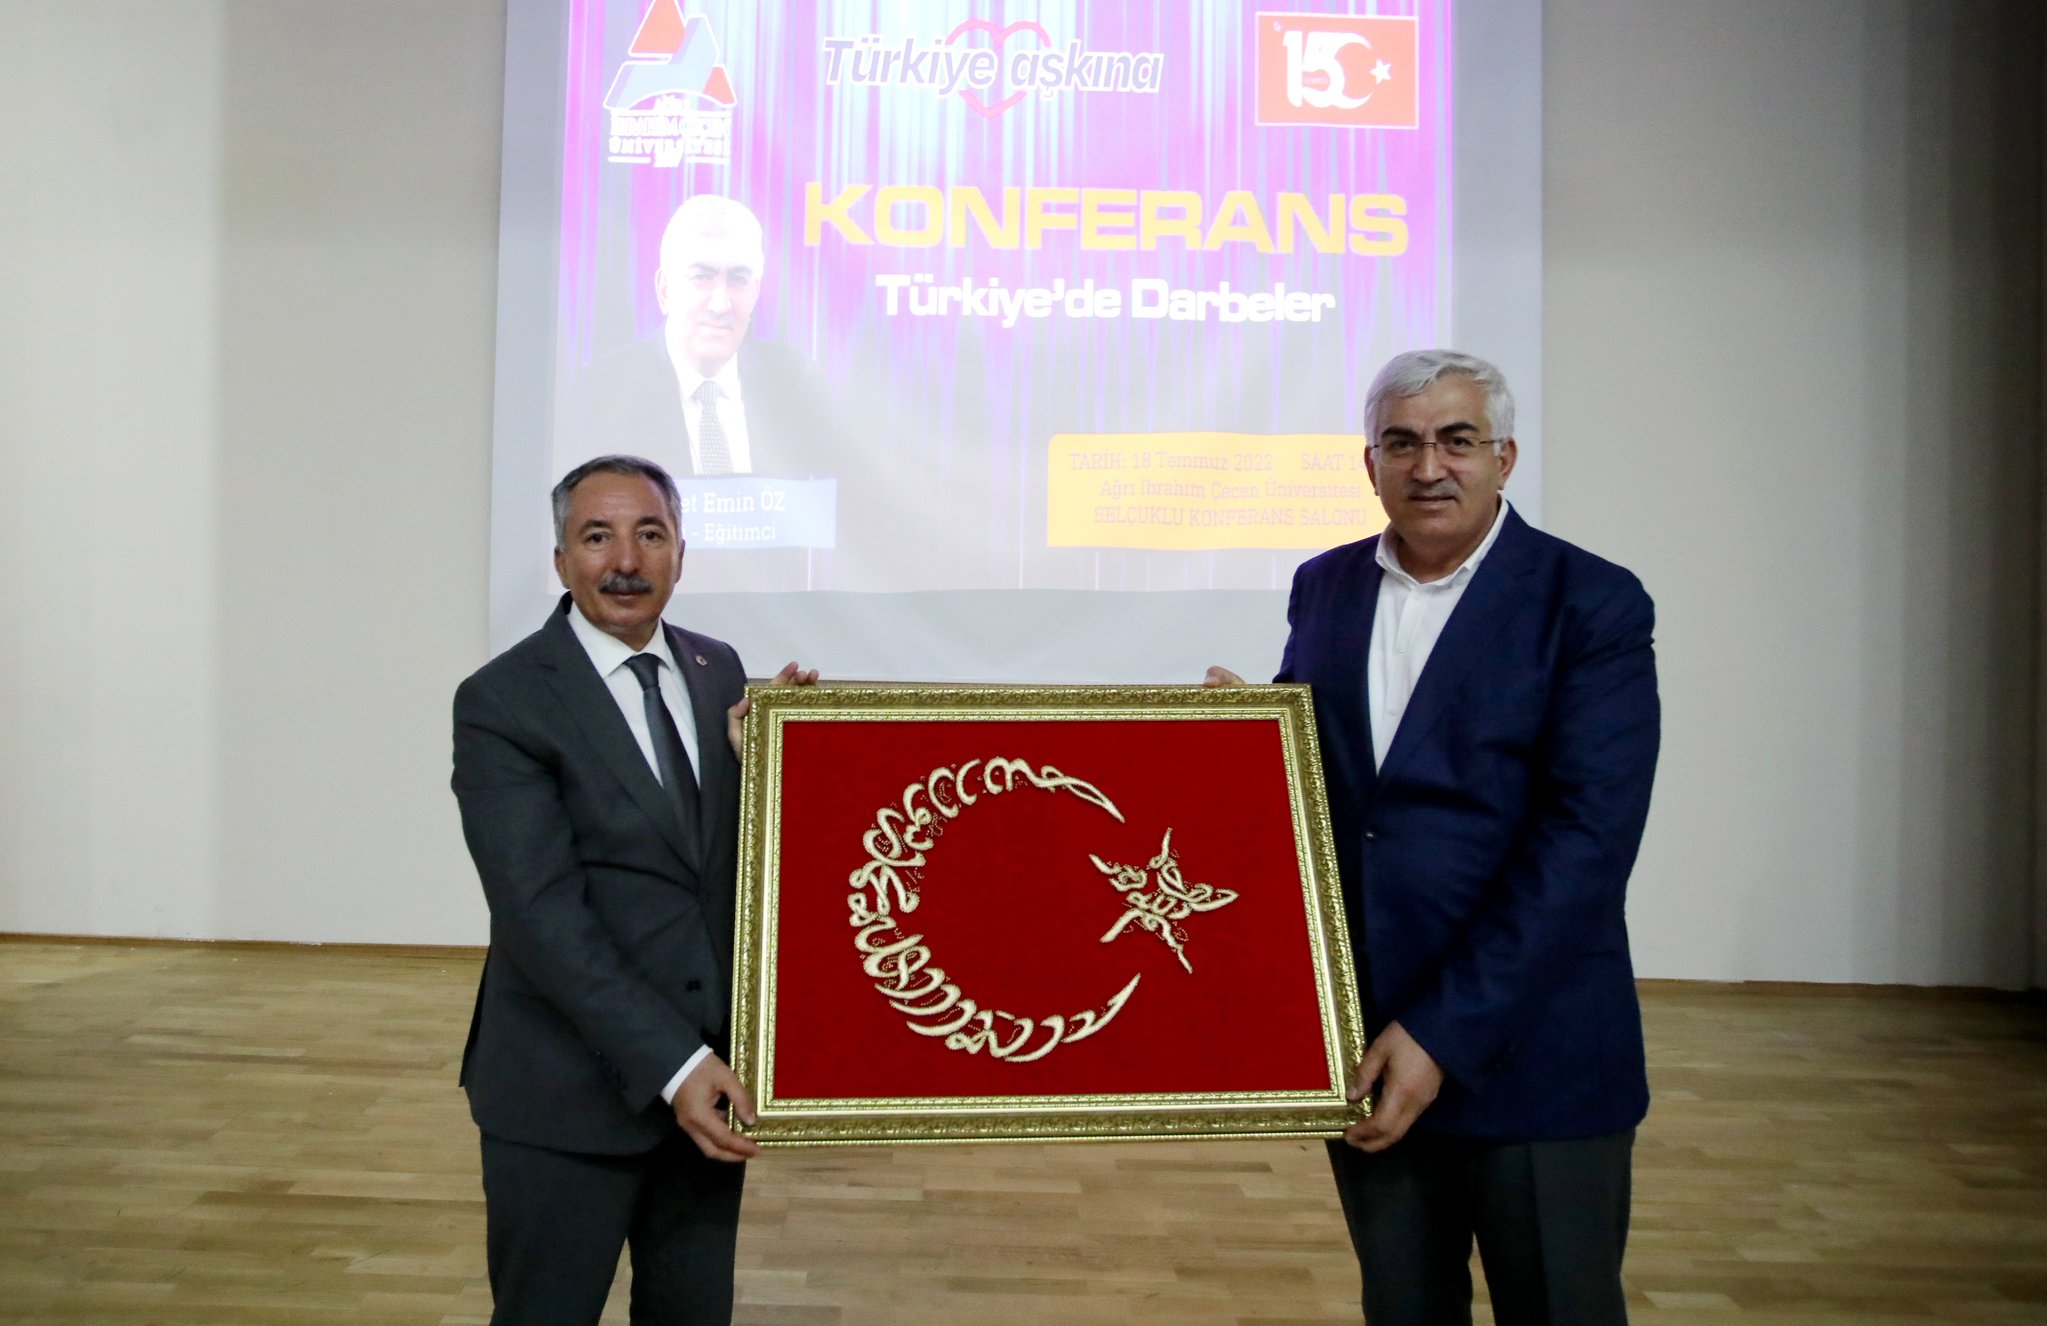 AİÇÜ’de “Türkiye’de Darbeler” Konferansı Gerçekleştirildi